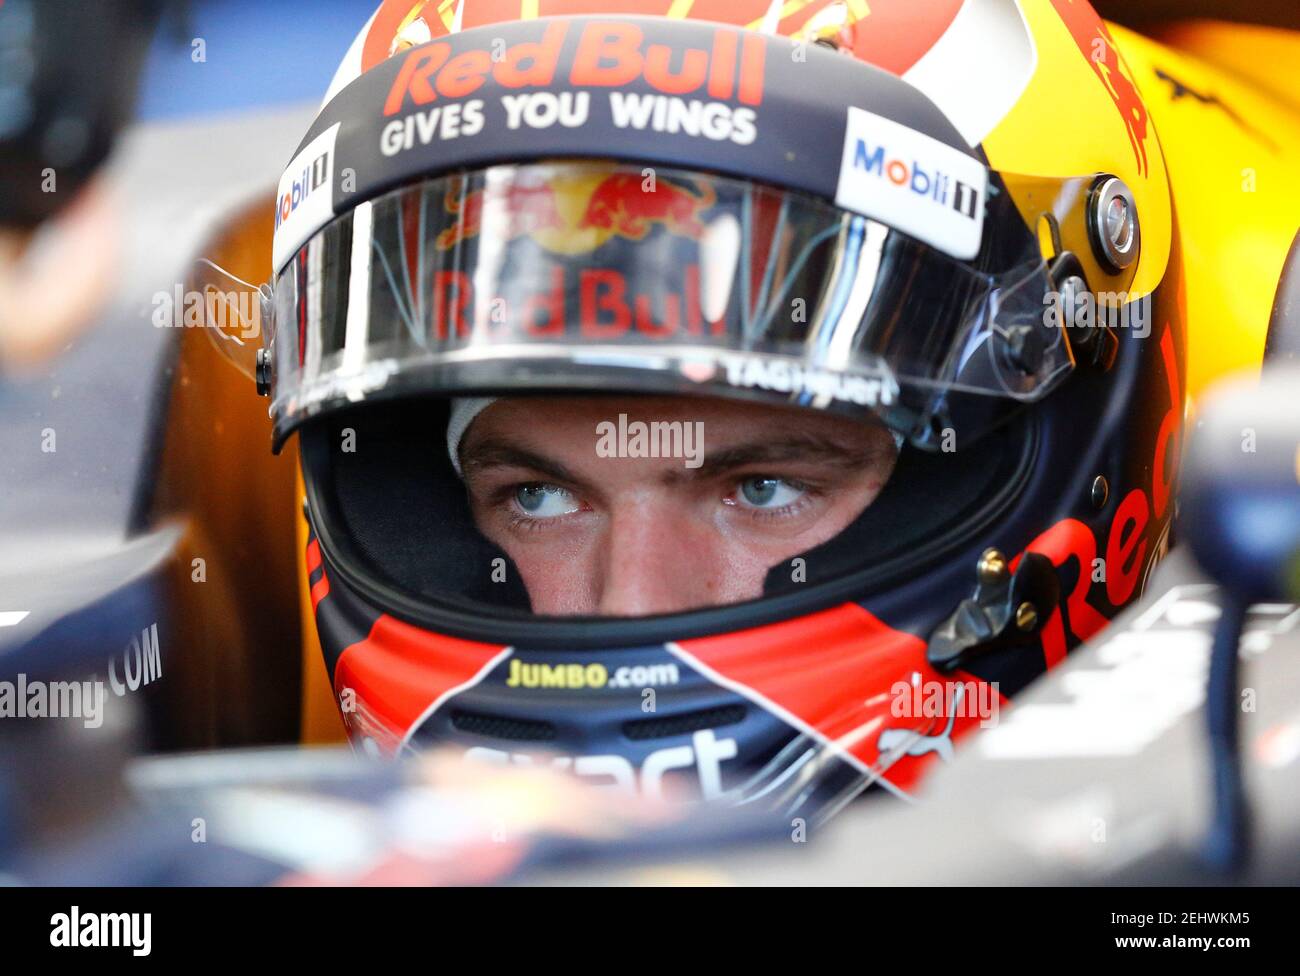 Formel 1 - F1 - großer Preis von Österreich 2017 - Red Bull Ring, Spielberg, Österreich - 7. Juli 2017 Max Verstappen von Red Bull Racing im Training Reuters/Dominic Ebenbichler Stockfoto